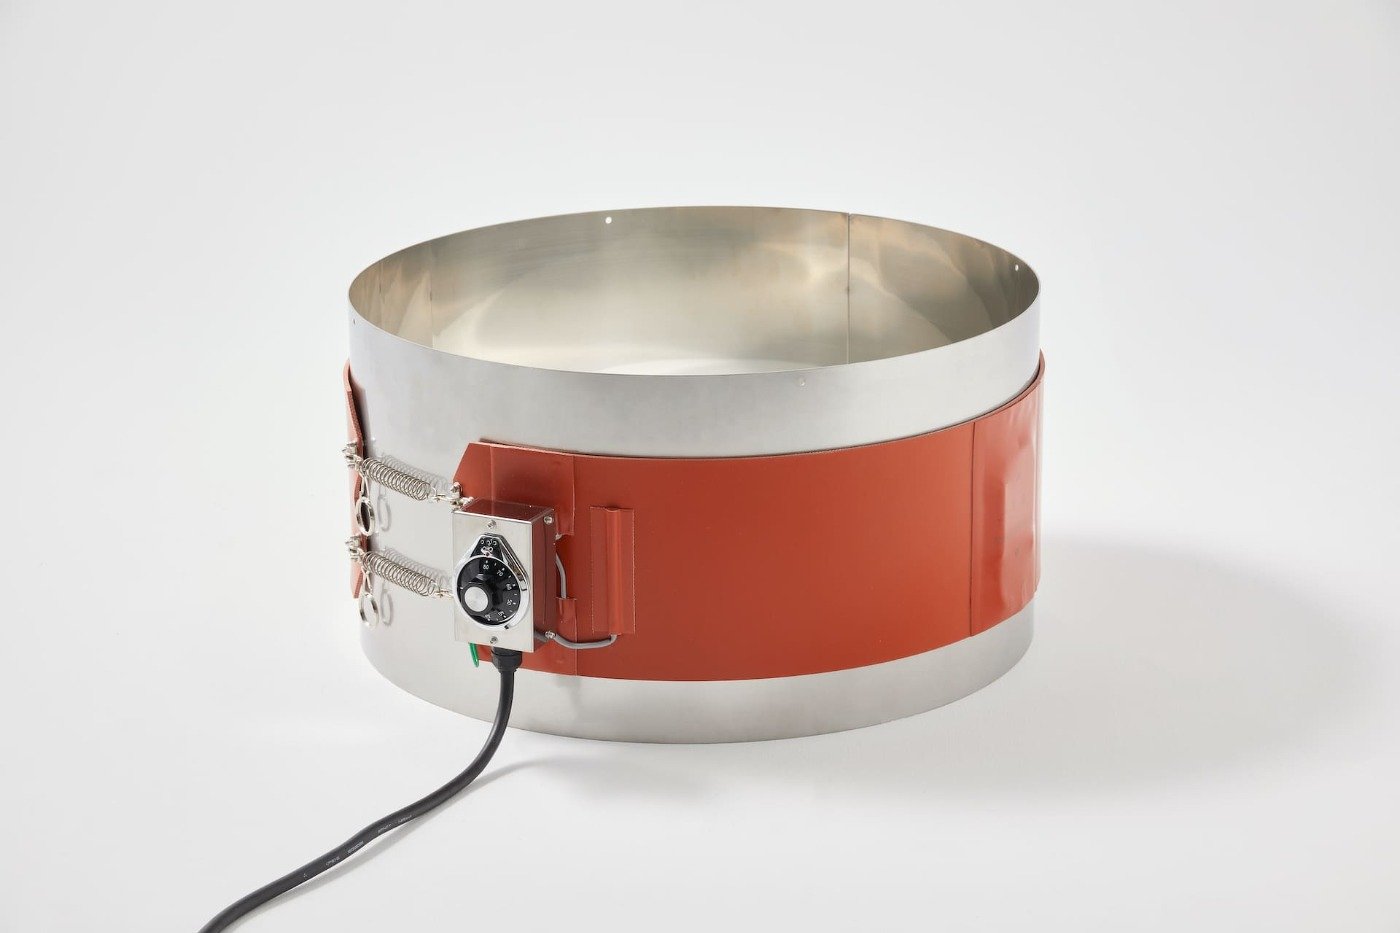 ドラム缶用ヒーター(100V PSE適合品) YGSN-200-1型 | 缶用ヒーター 